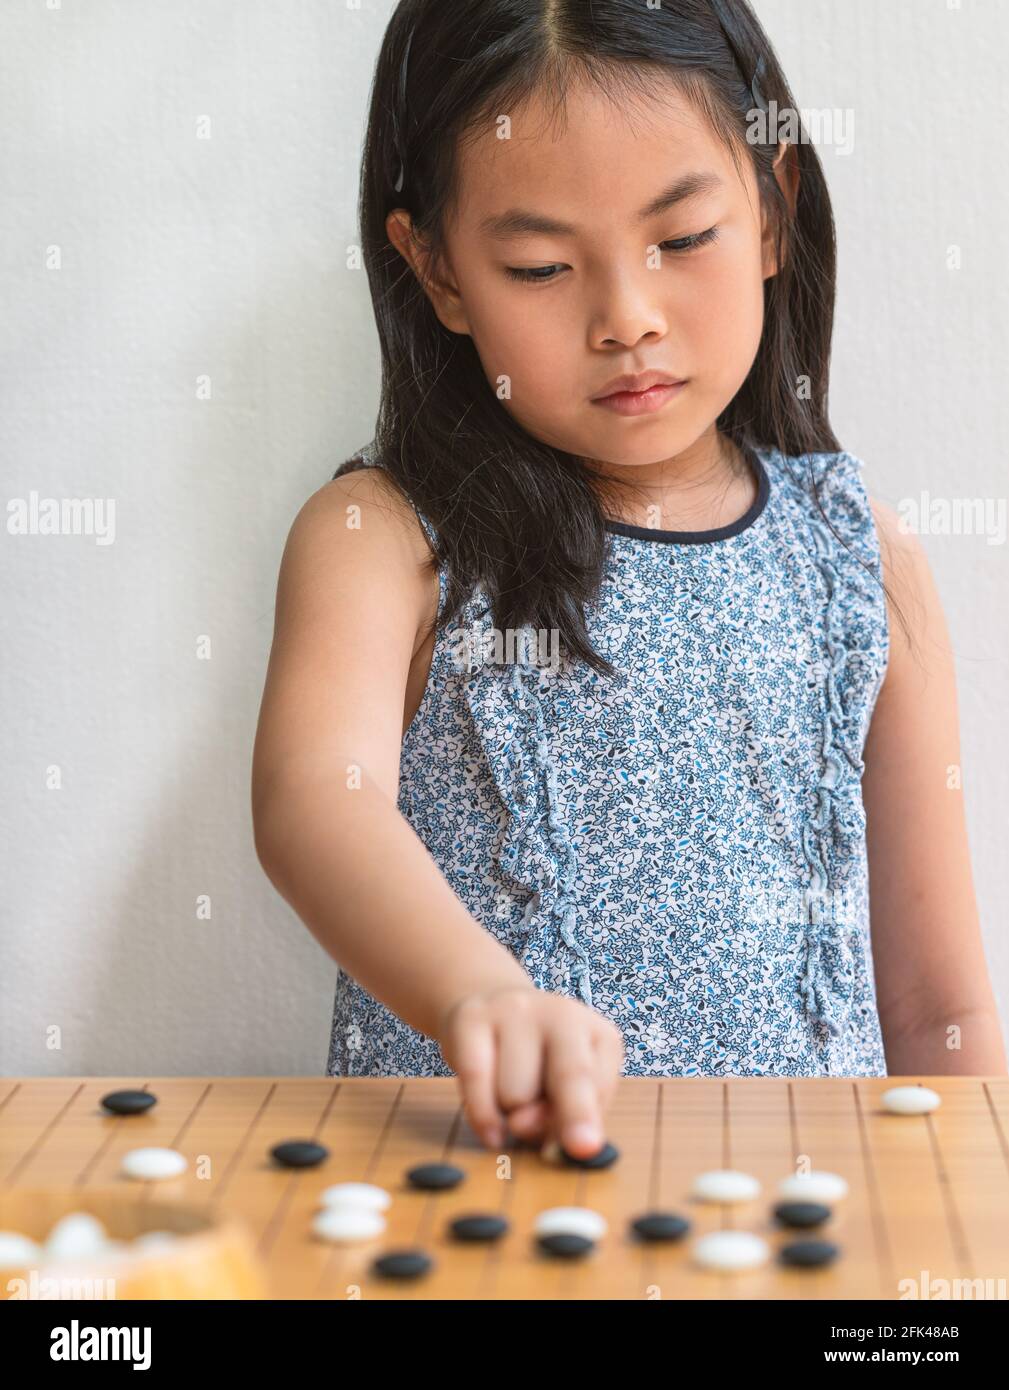 Ritratto Asian bambina ragazza gioca Go, il gioco da tavolo giapponese o cinese, mettere a fuoco sul gioco da tavolo, parete bianca, immagine verticale. Foto Stock